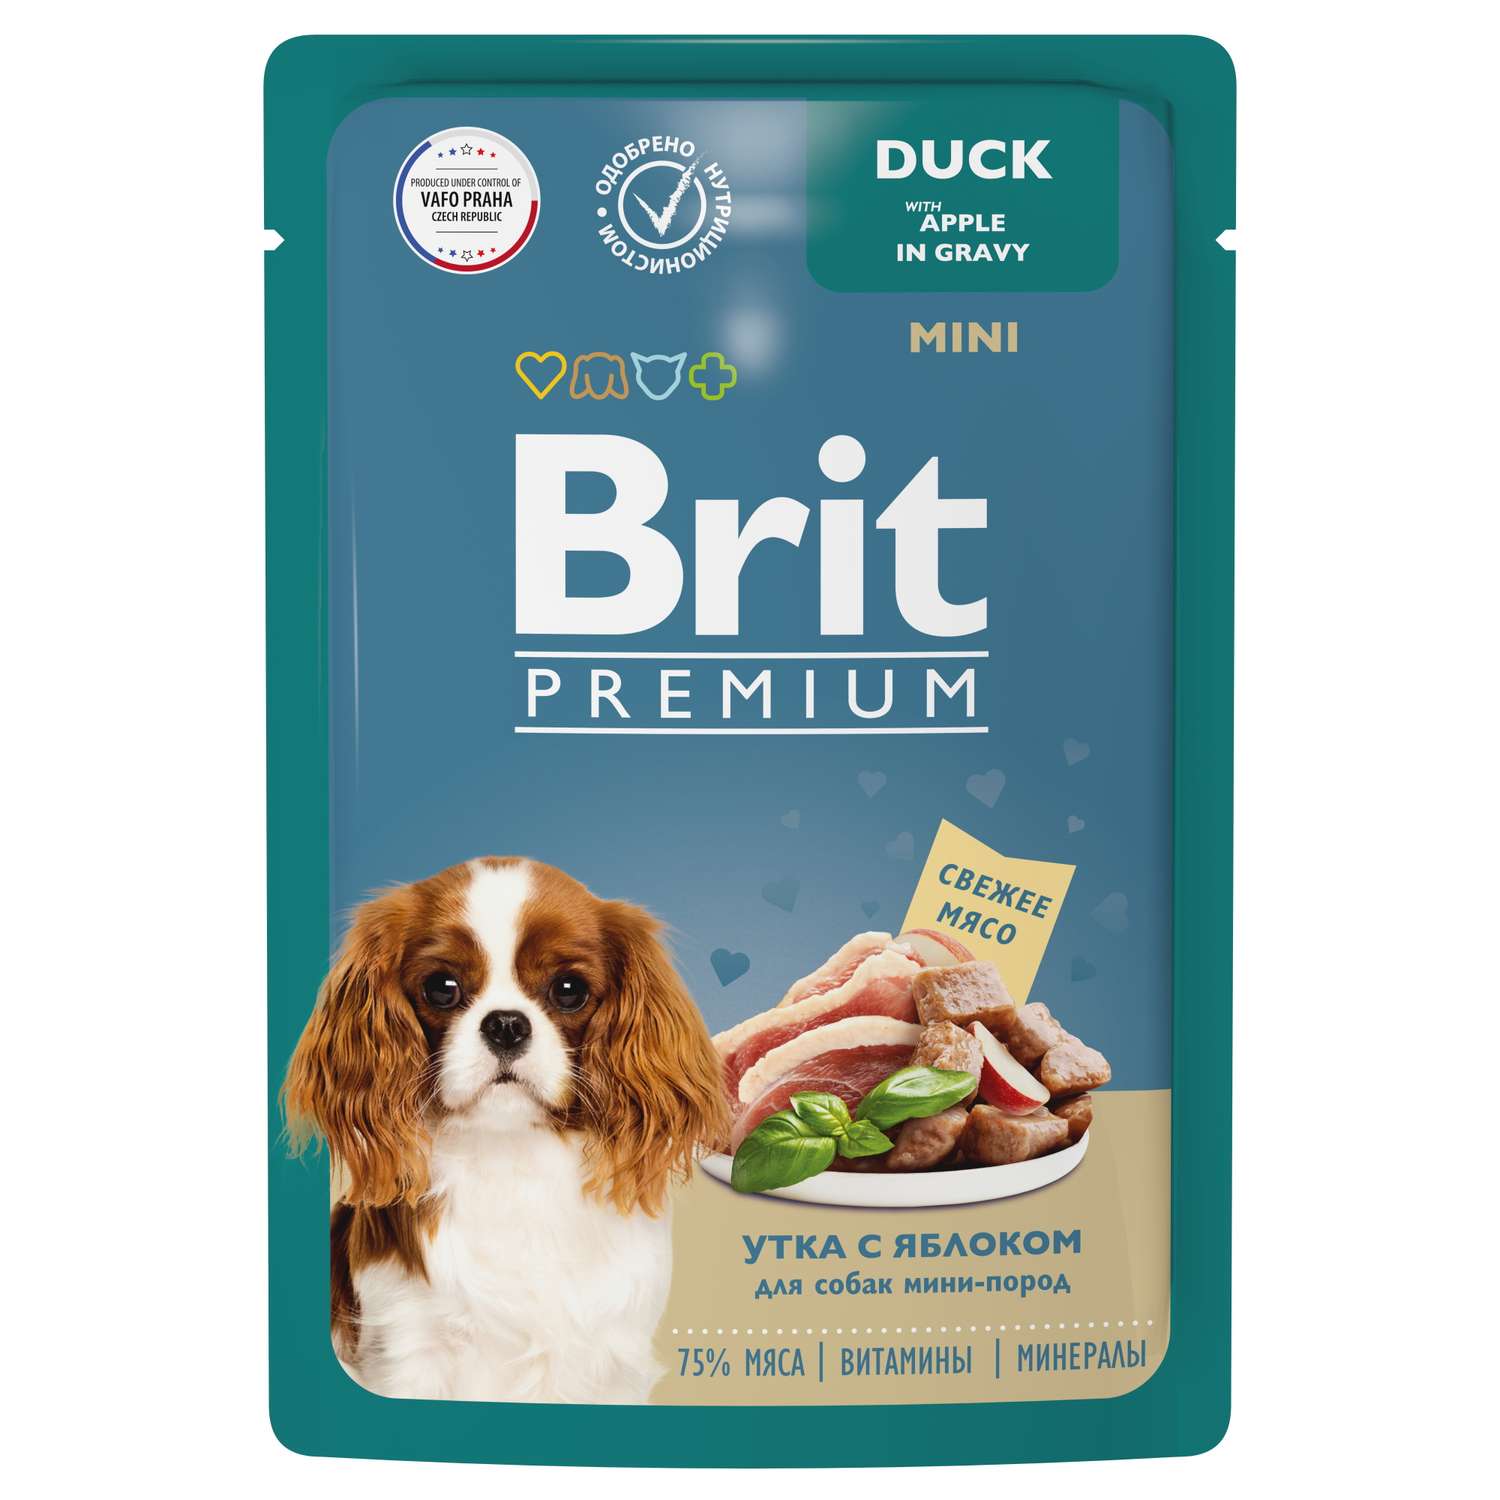 Корм для собак Brit 85г Premium Dog миниатюрных пород утка с яблоком в соусе - фото 1